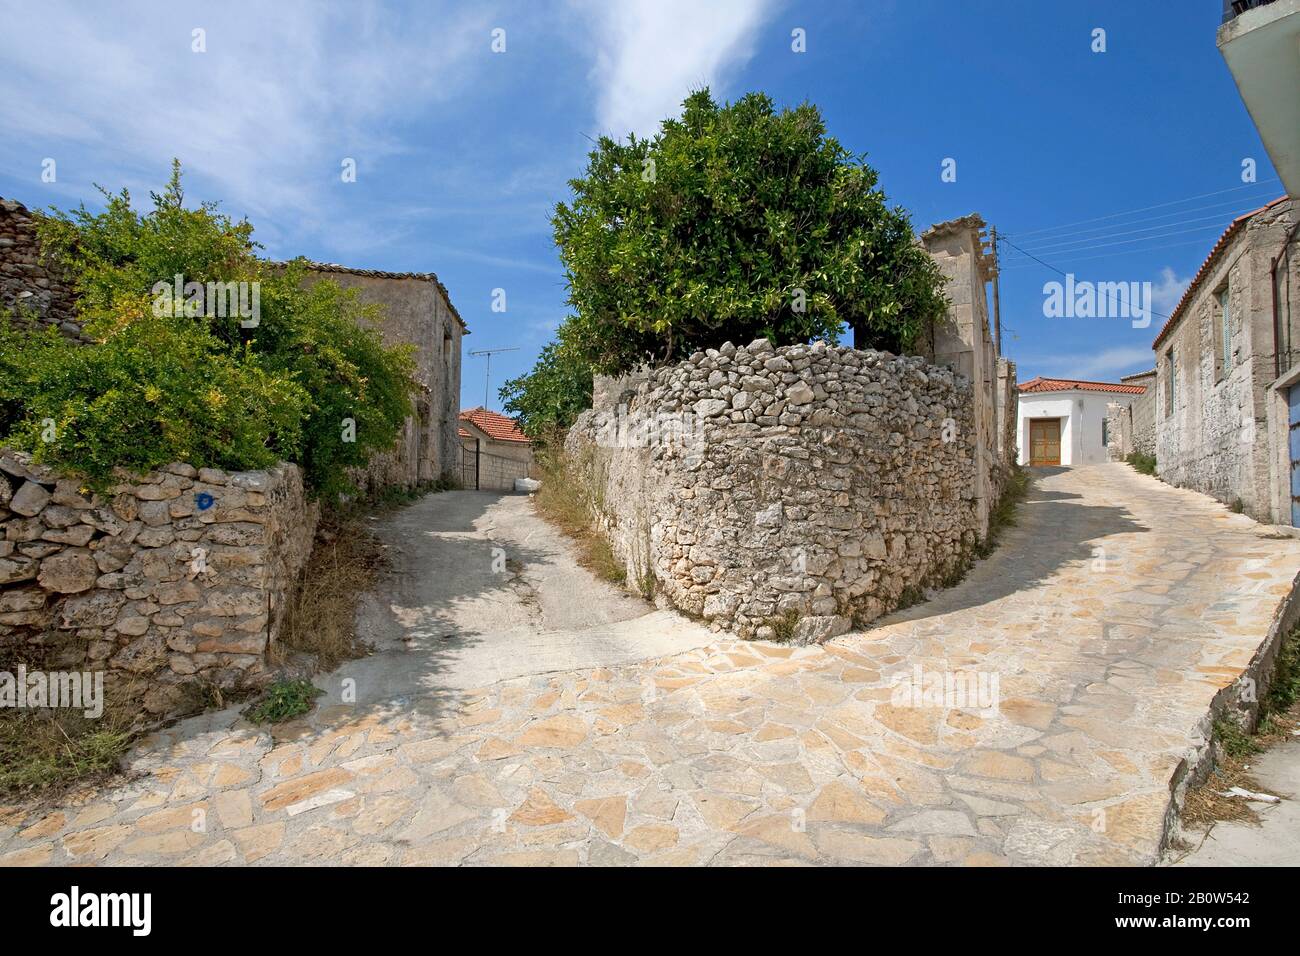 Le village Maries sur l'île de Zakynthos, Grèce Banque D'Images